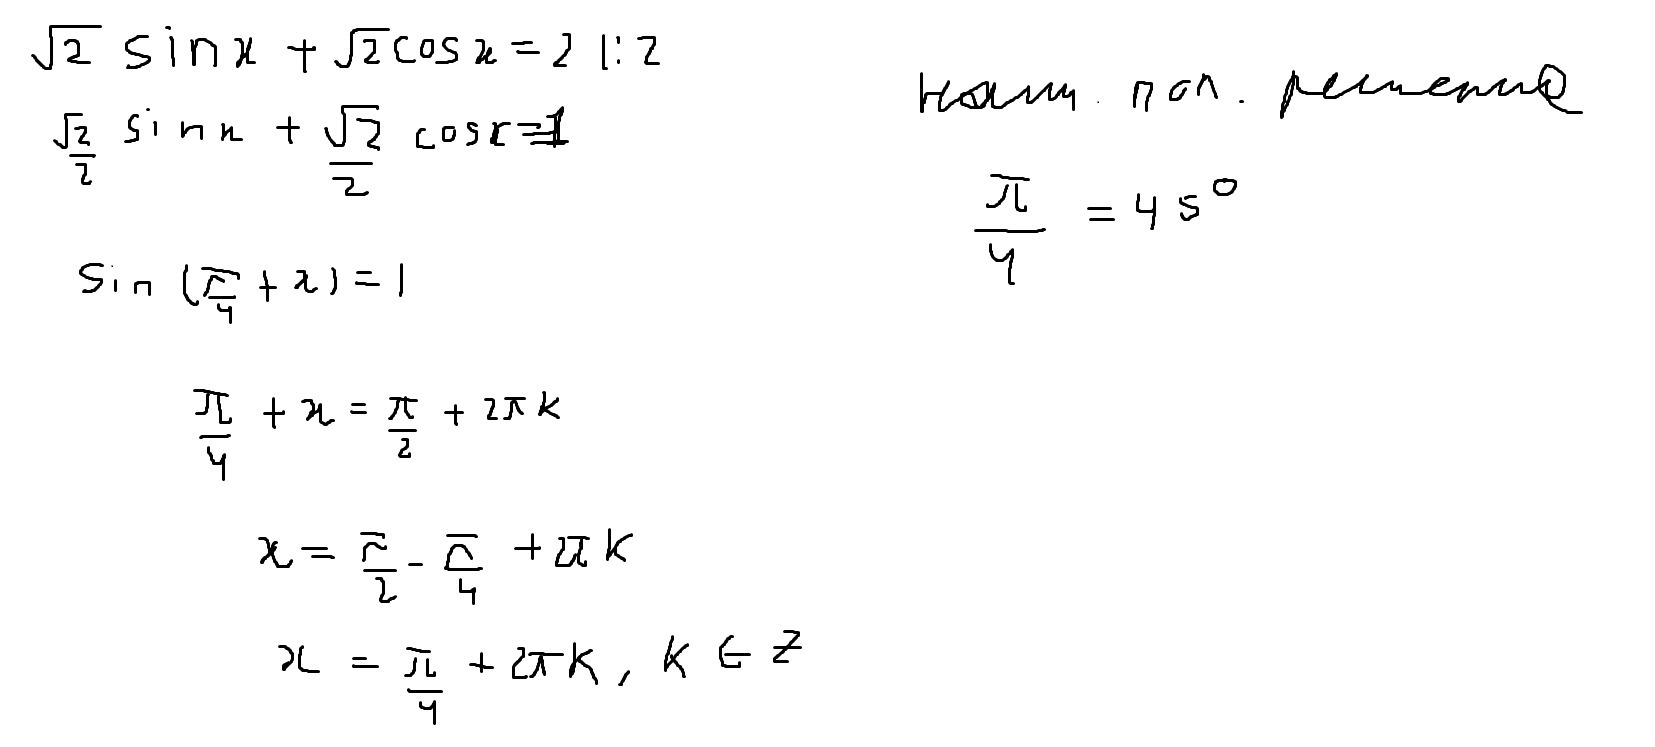 Sinx 4 корень из 2 2. Sin x корень 2/2 решение. Укажите наименьший положительный корень уравнения 2sinx+1 0. Sin=1/2 и укажите наименьший положительный корень уравнения в градусах. Найдите наименьший положительный корень уравнения 2sinx+ корень из 3=1.